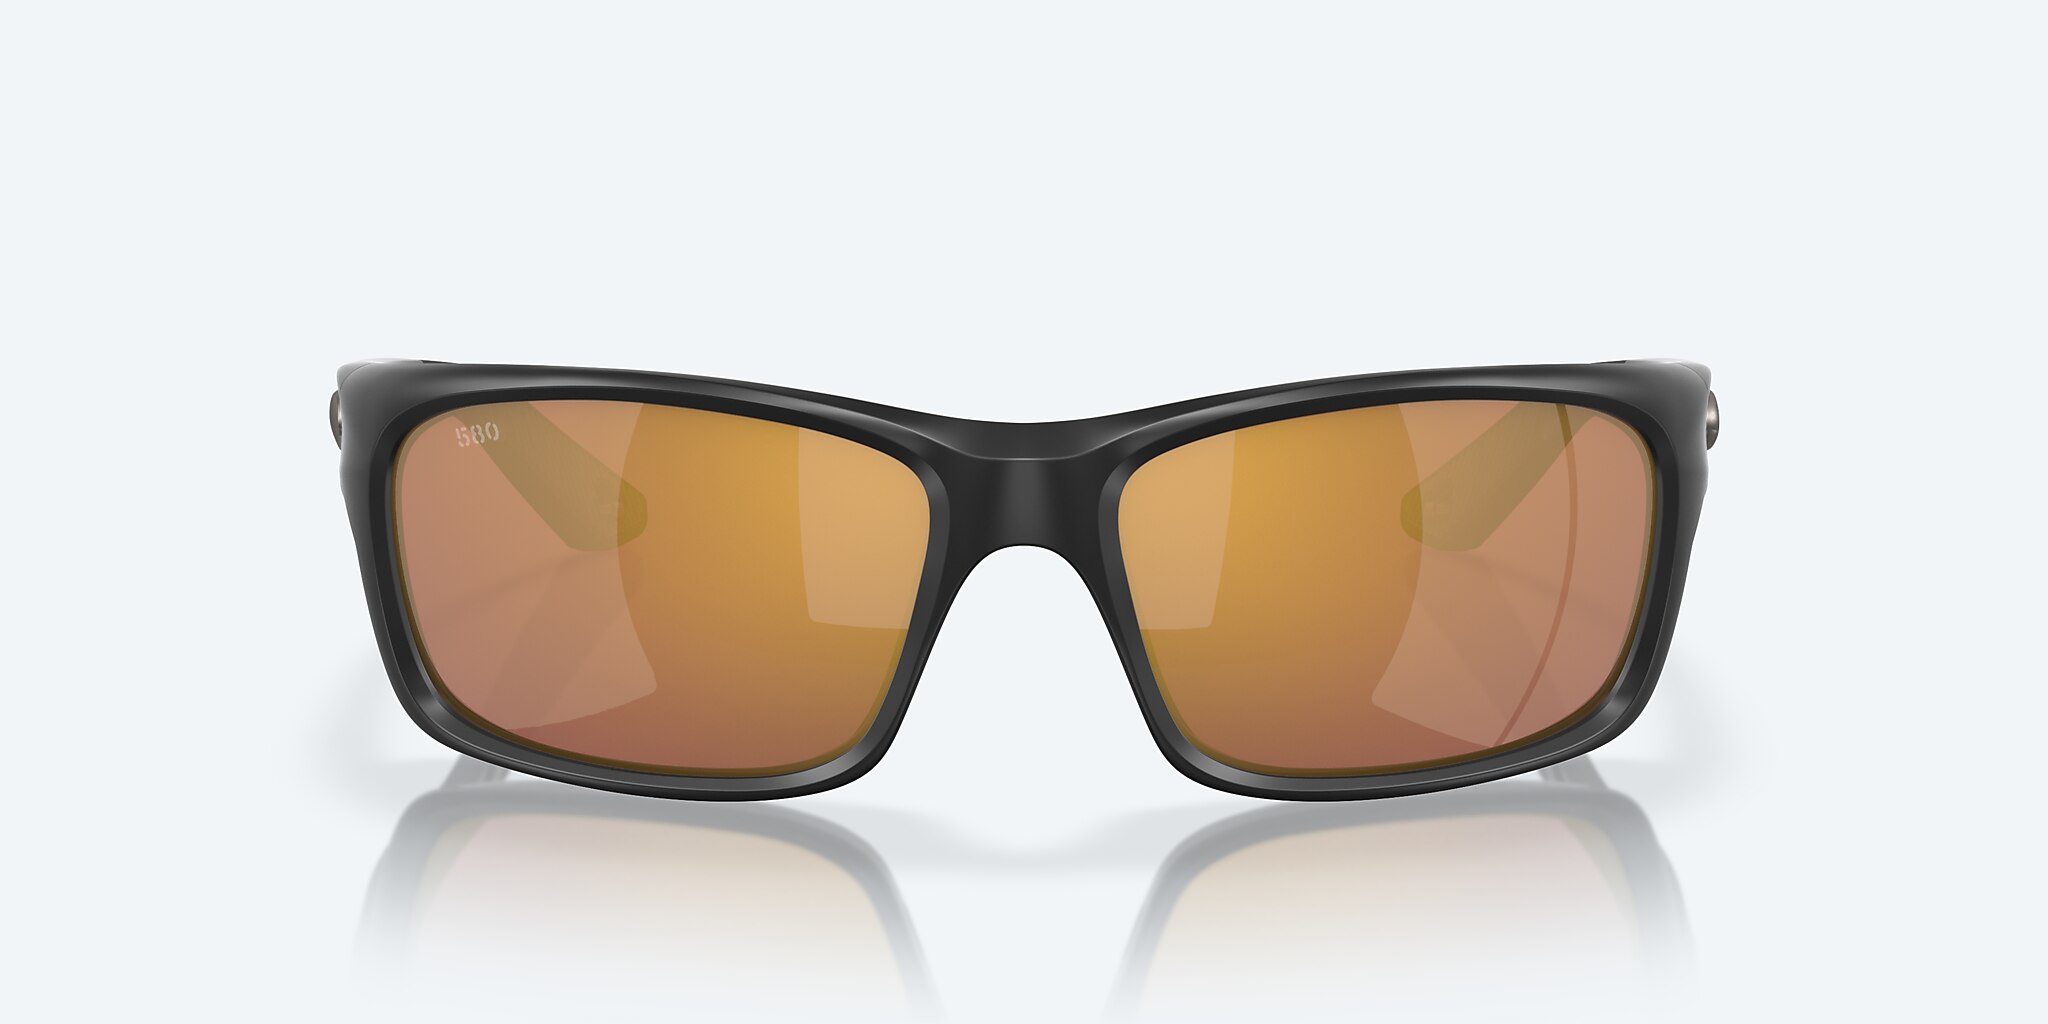 Costa Jose Pro Sunglasses Matte Black / Gold Mirror 580G